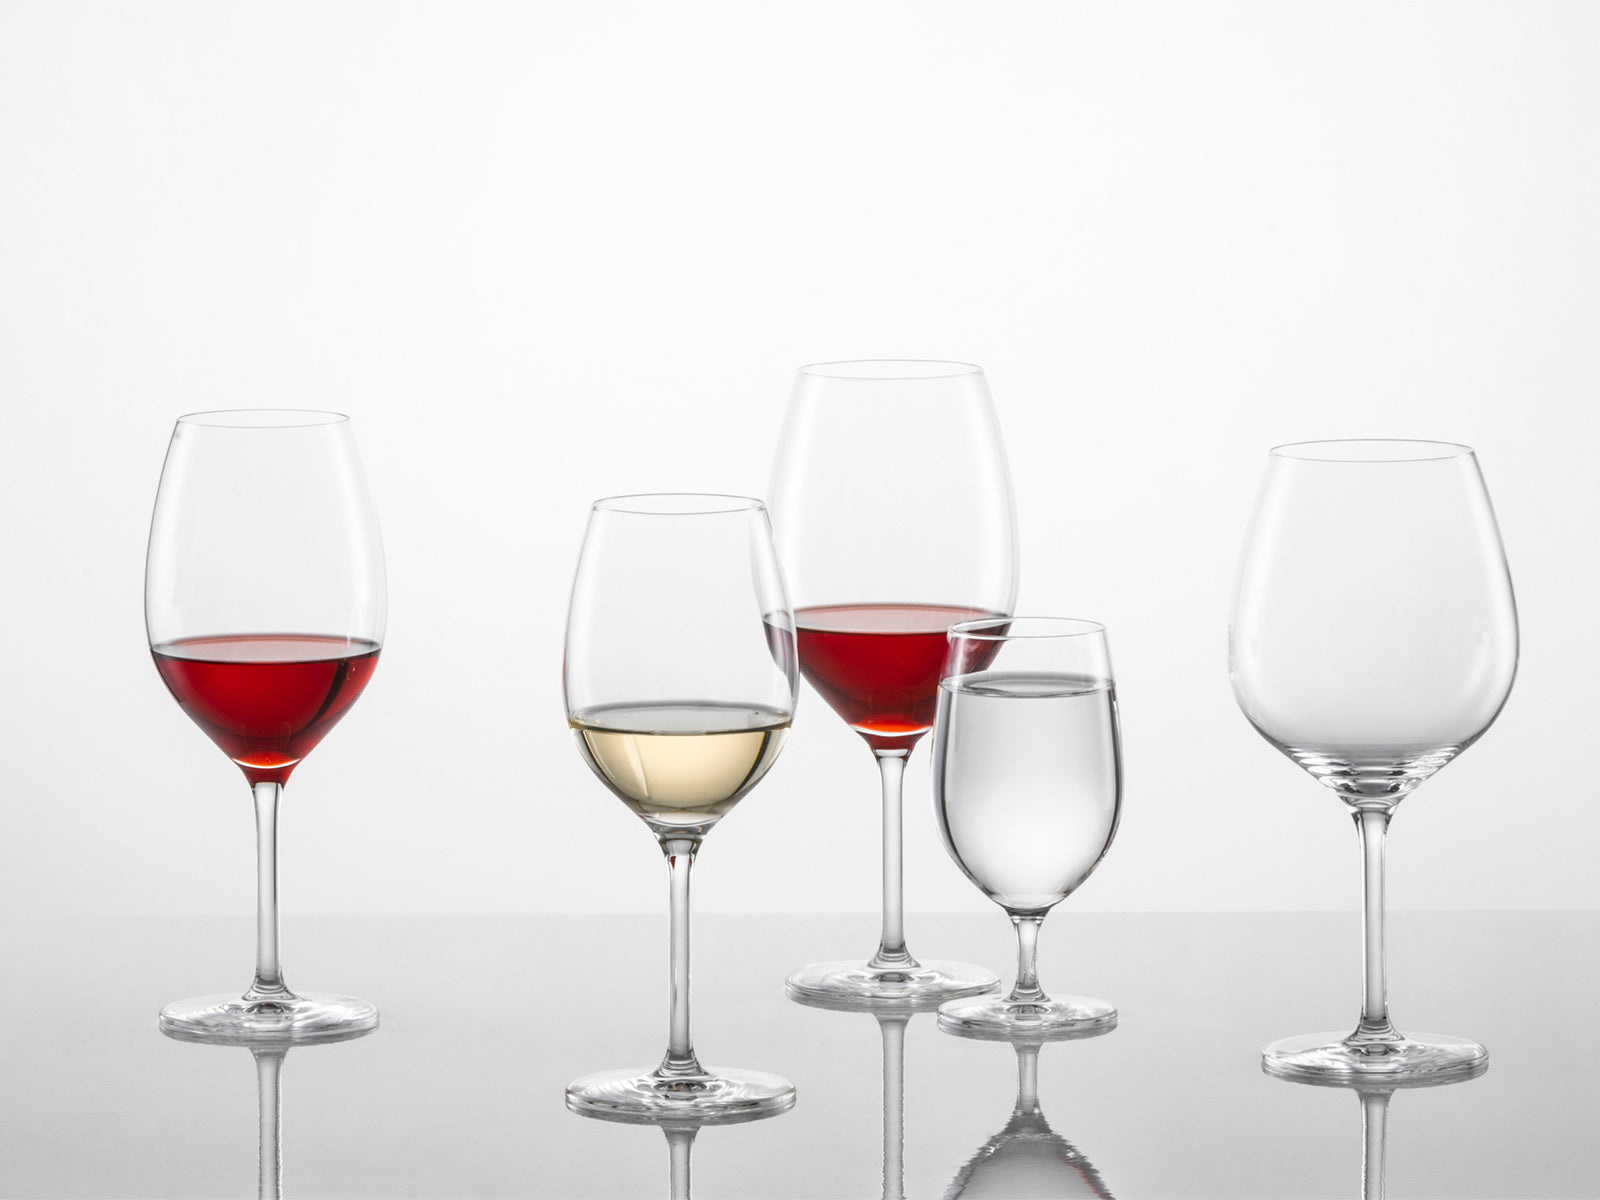 Cinco sets de copas de vino ideales para servir una elegante cena